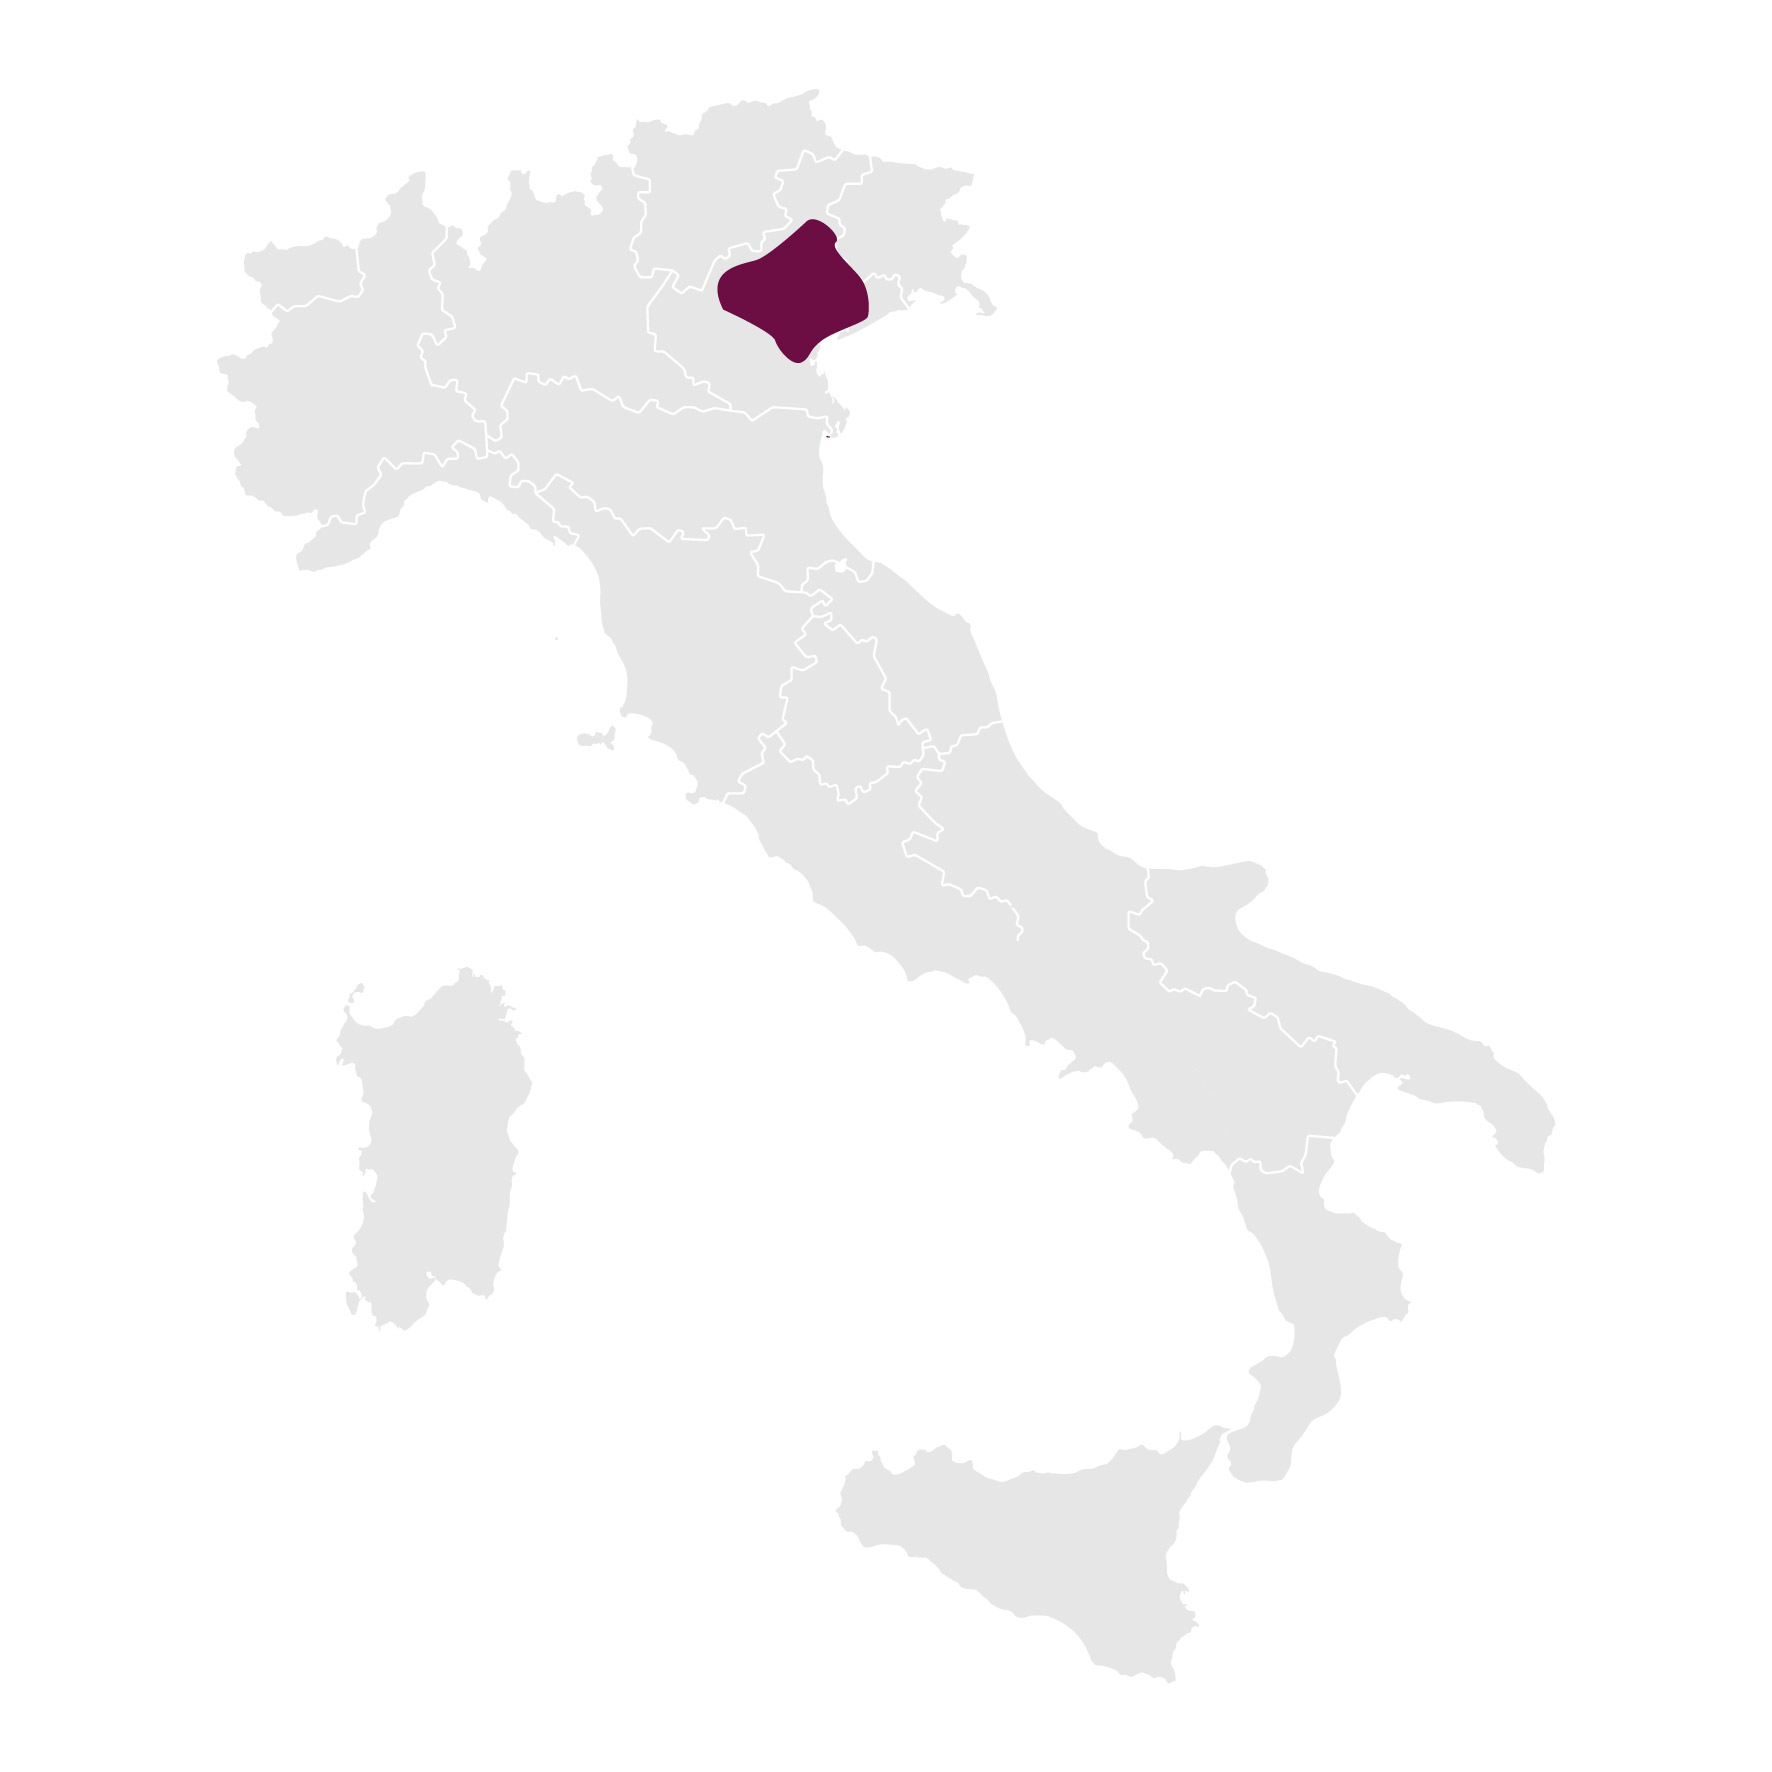 Włochy_Conegliano-Valdobbiadene